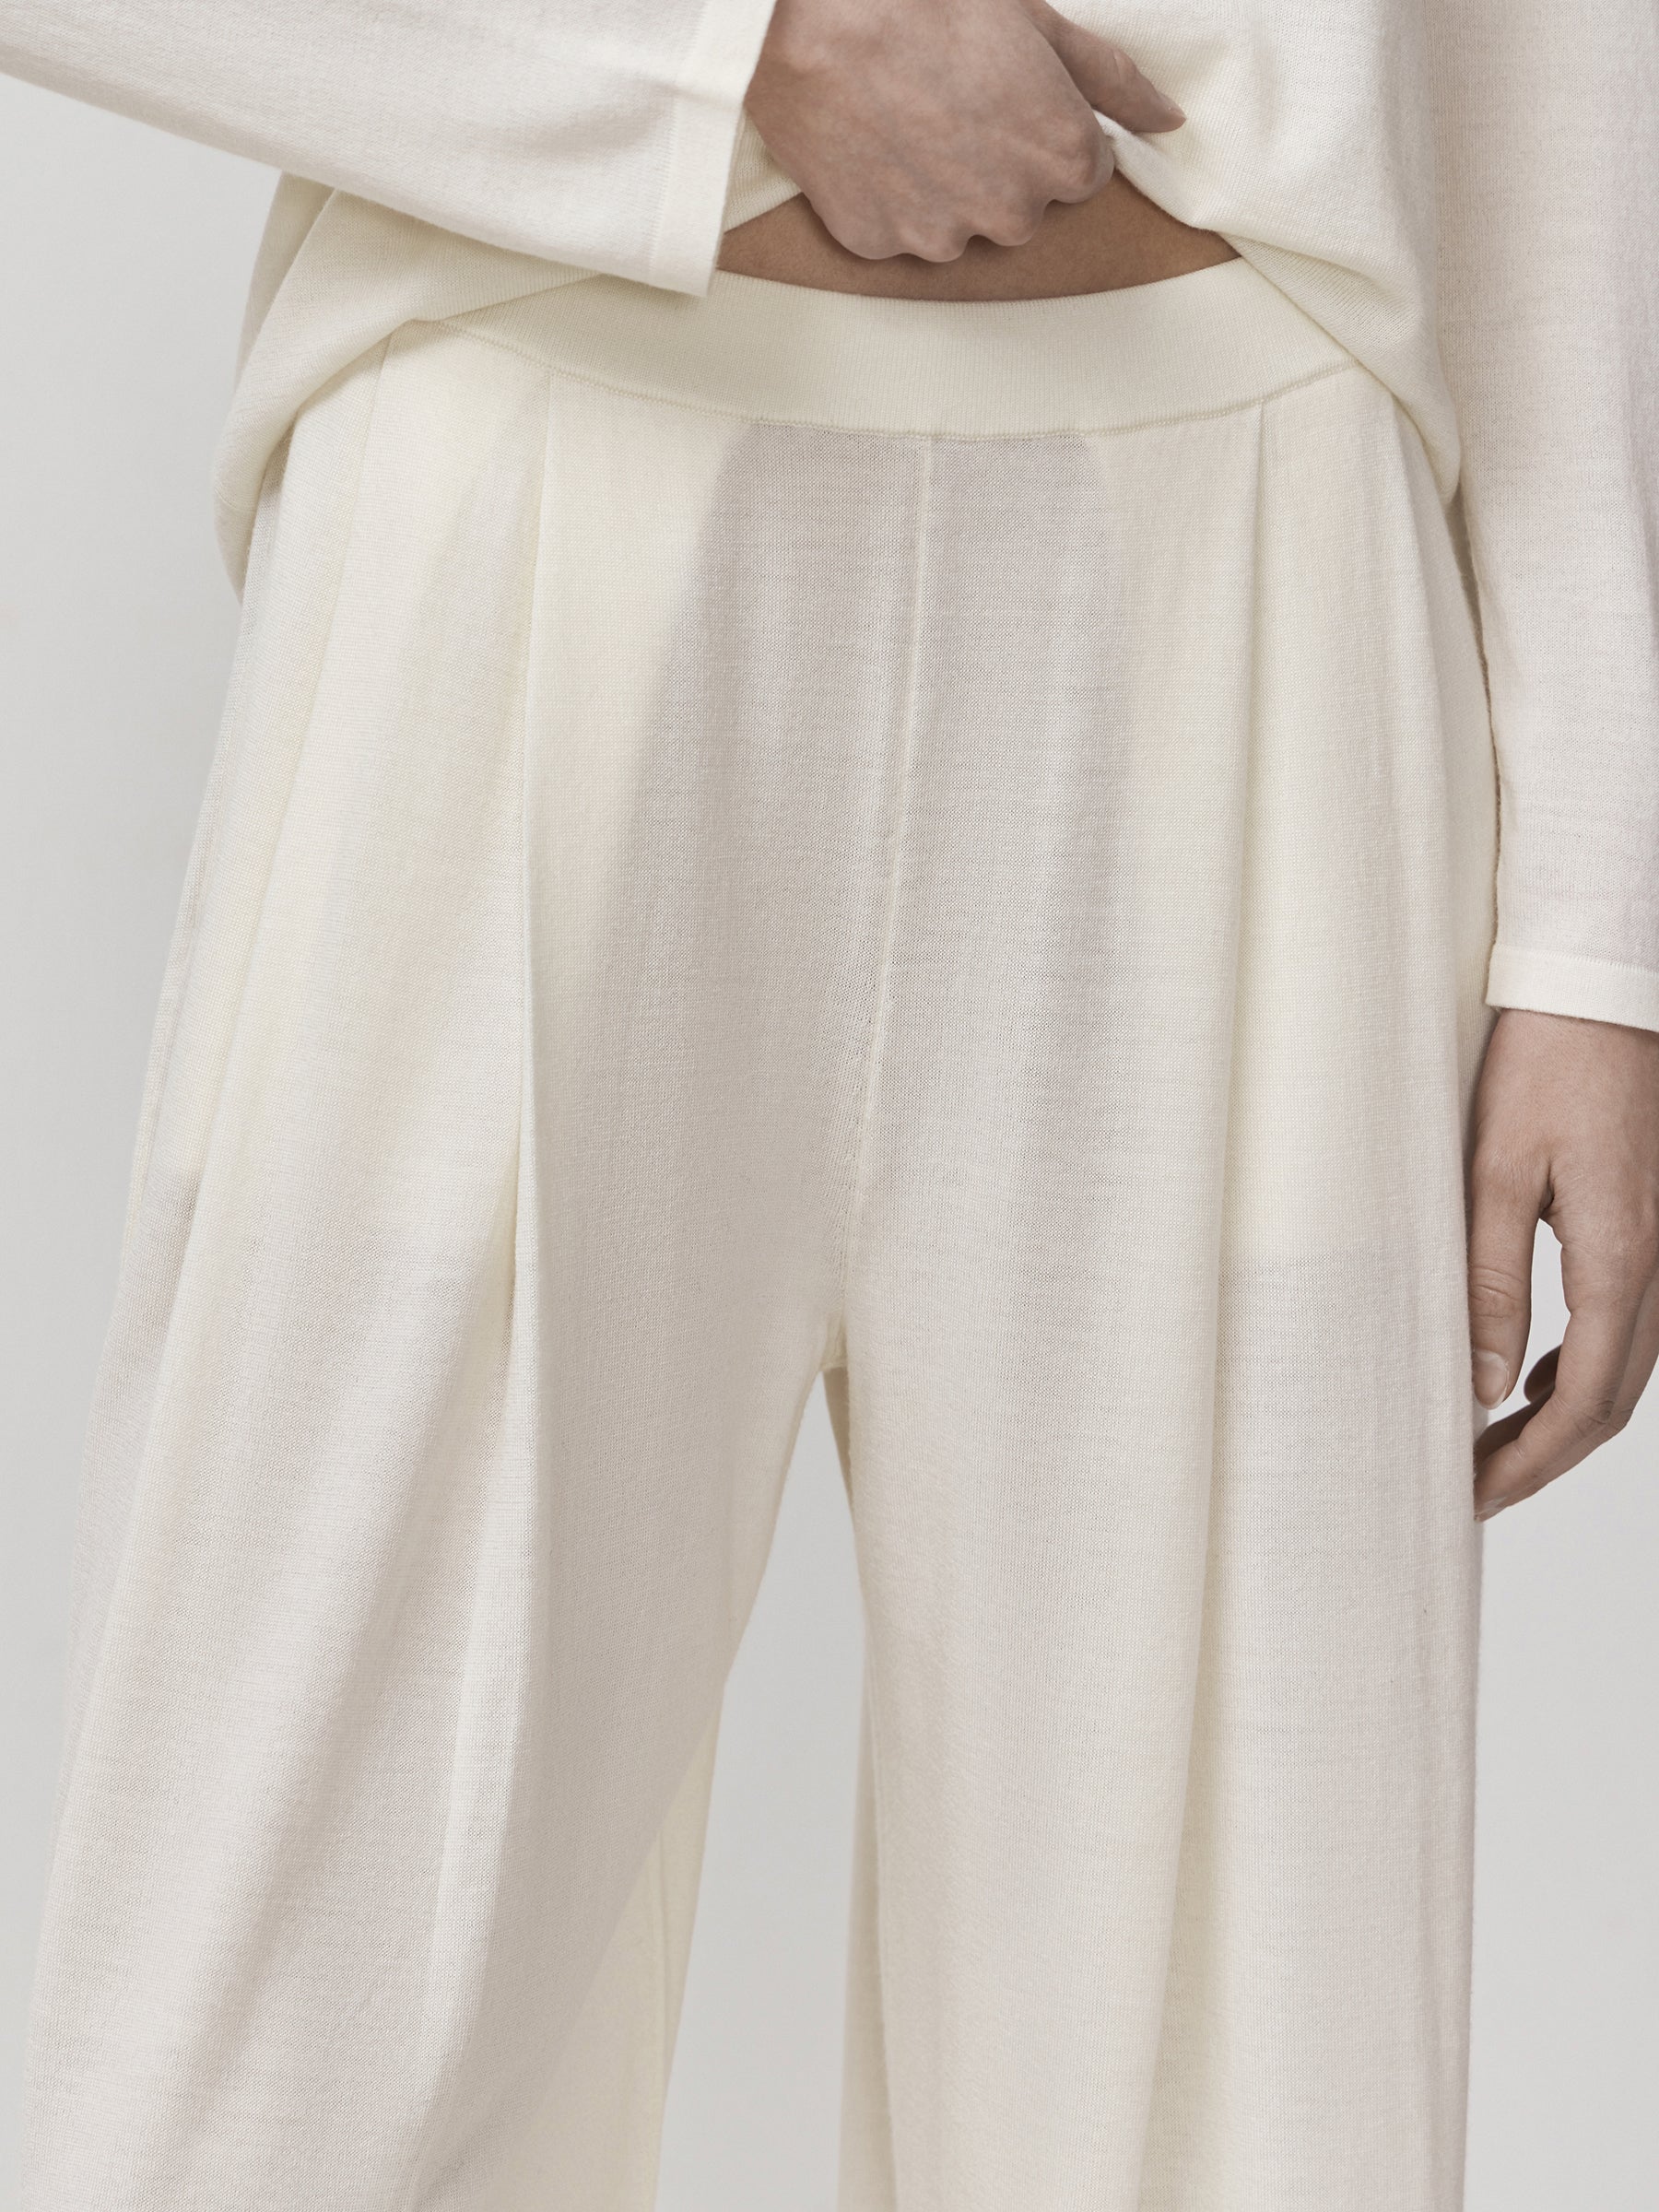 Merino-silk trousers